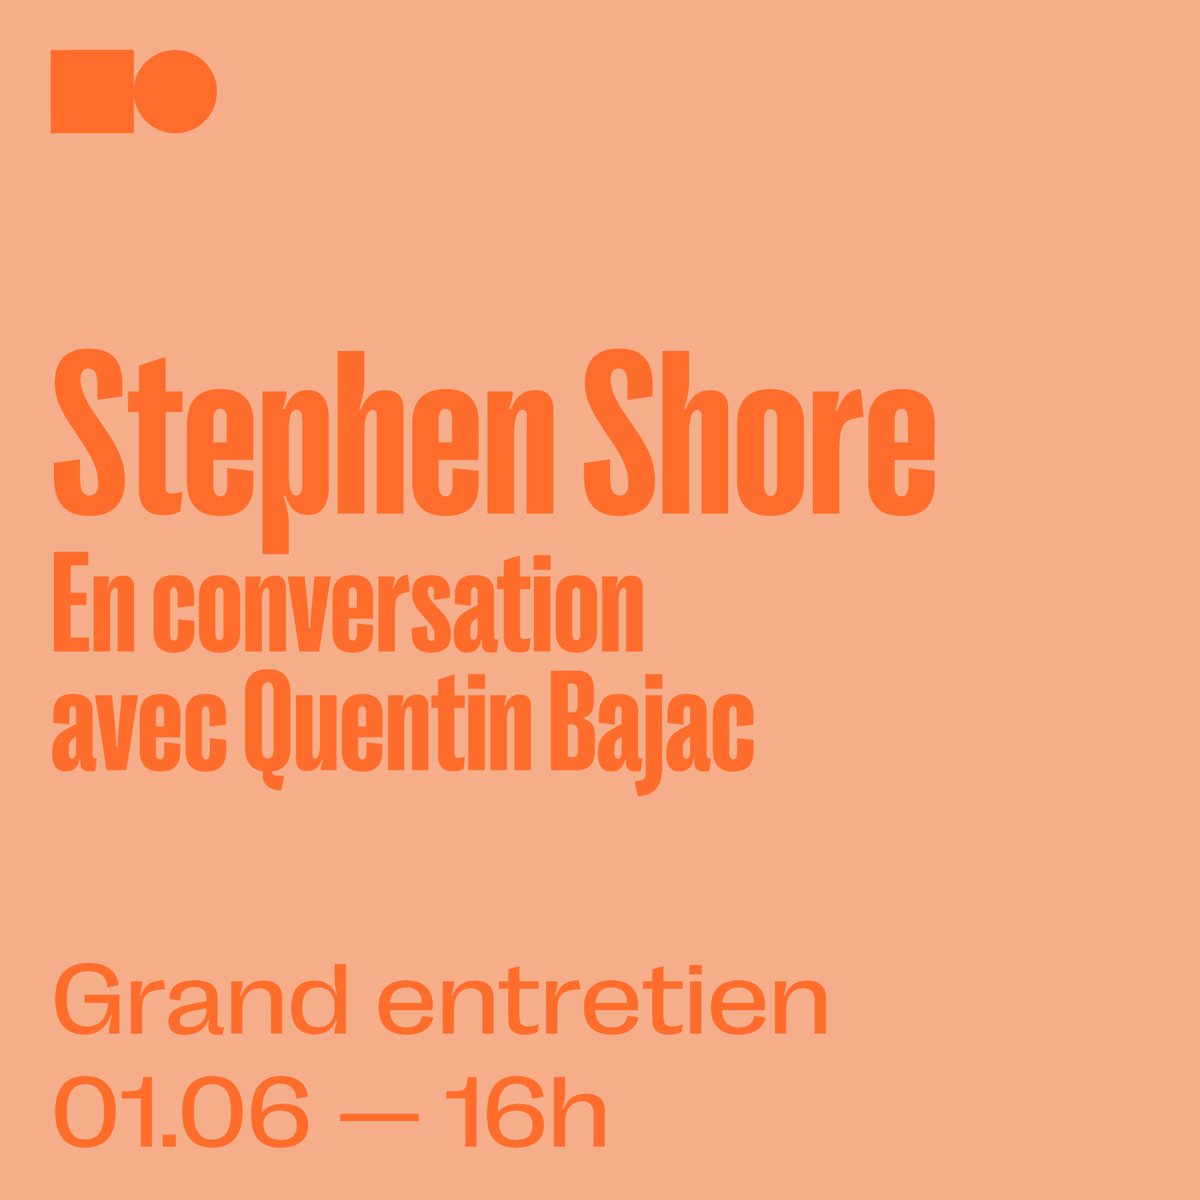 ⛽ Grand entretien avec Stephen Shore 𝗦𝗮𝗺𝗲𝗱𝗶 𝟭𝗲𝗿 𝗷𝘂𝗶𝗻 𝟮𝟬𝟮𝟰 à 𝟭𝟲𝗵 Plus d'informations : henricartierbresson.org/rencontres/gra…